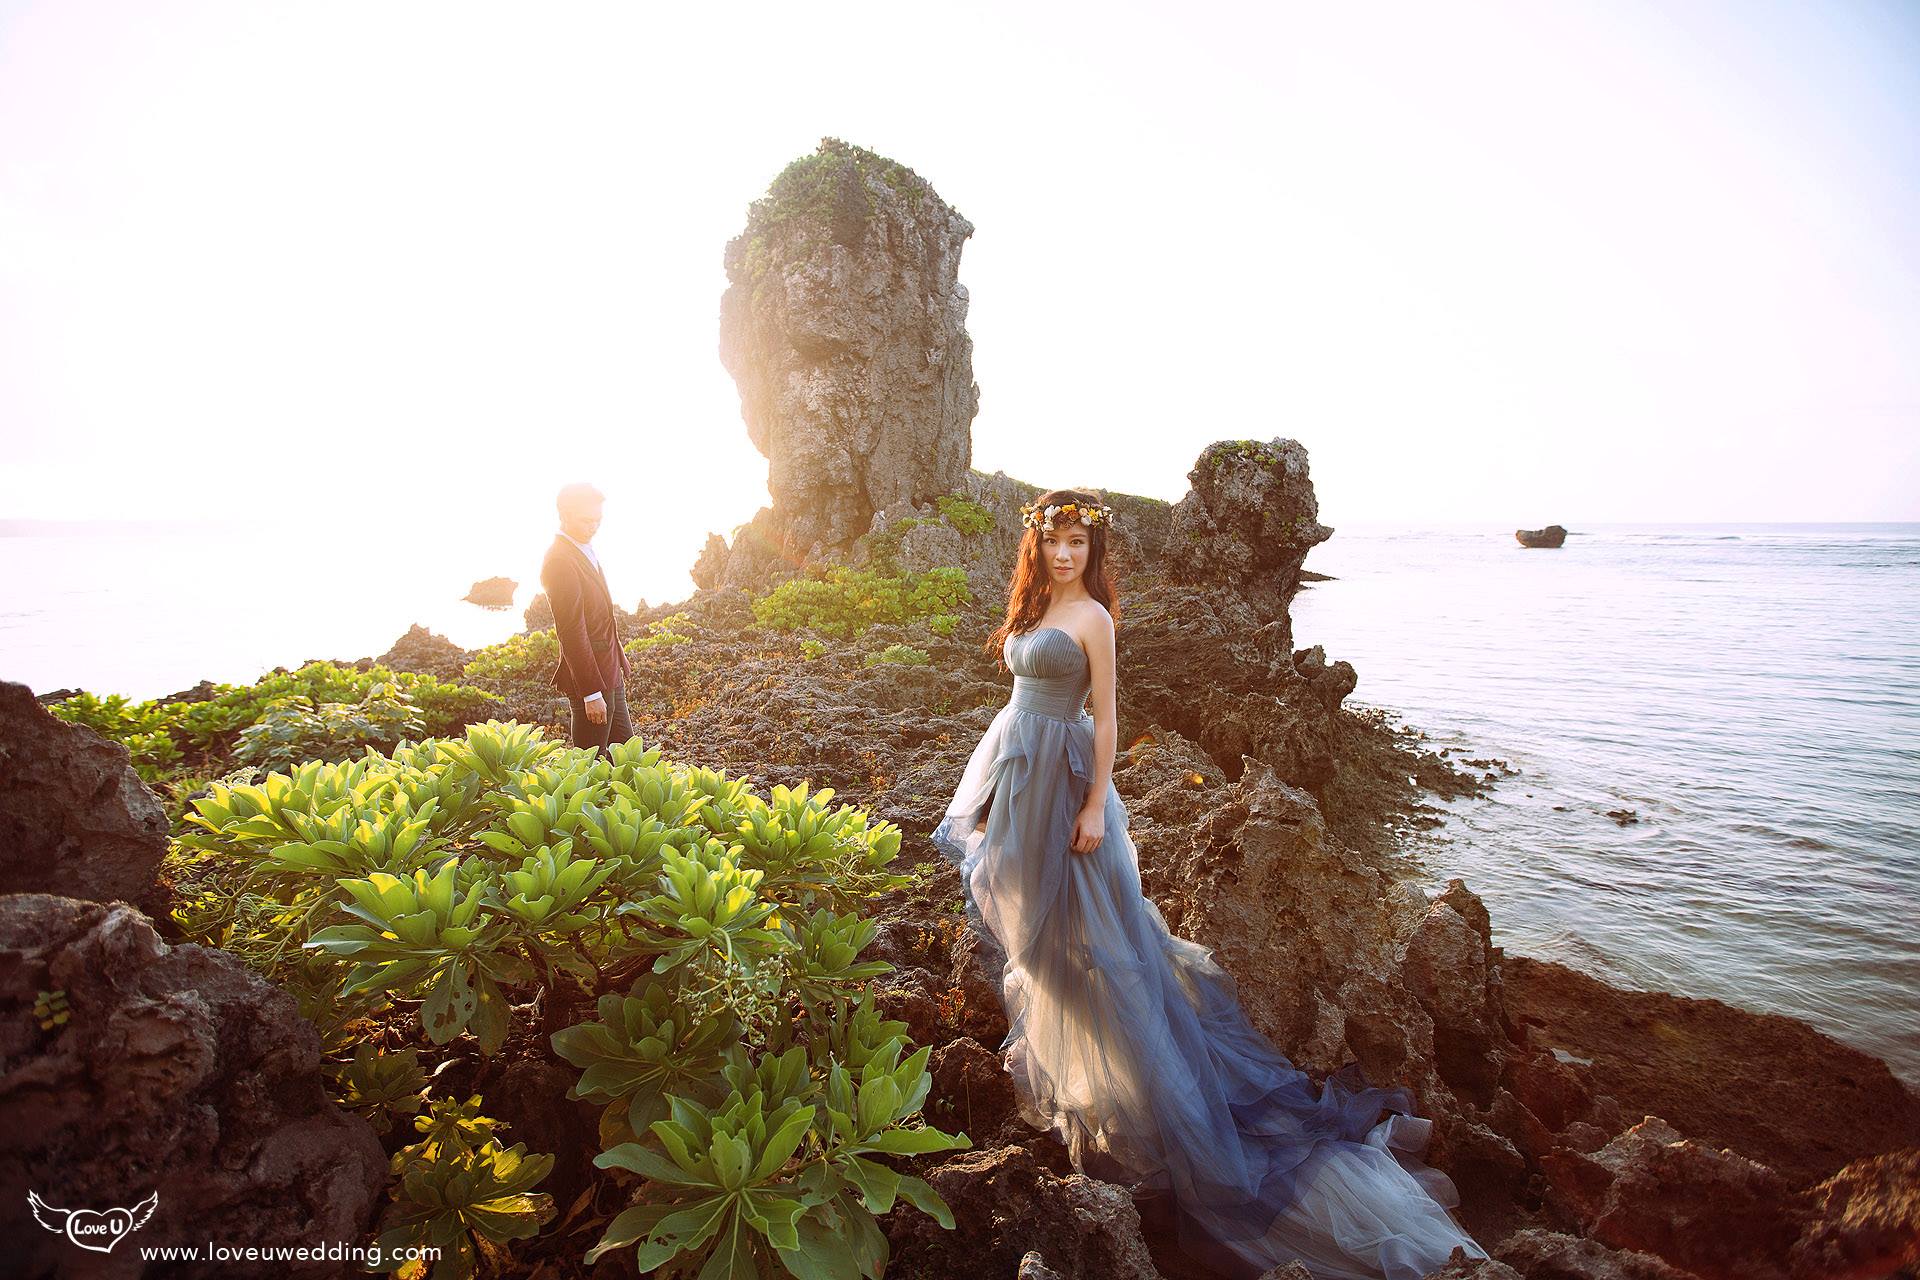 沖繩海外婚紗